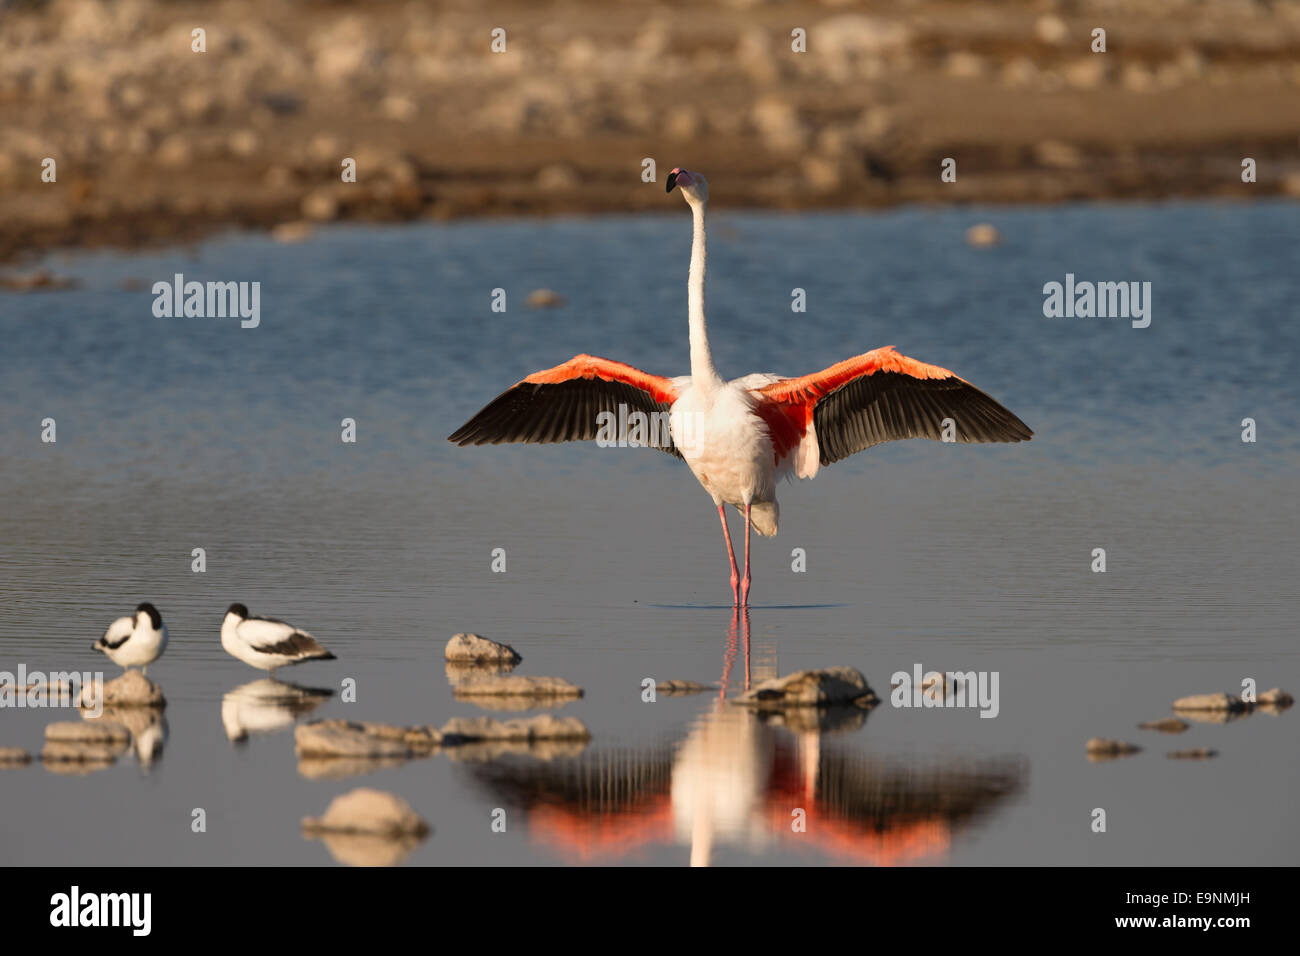 Greater flamingo (Phoenicopterus ruber), Etosha National Park, Namibia Stock Photo